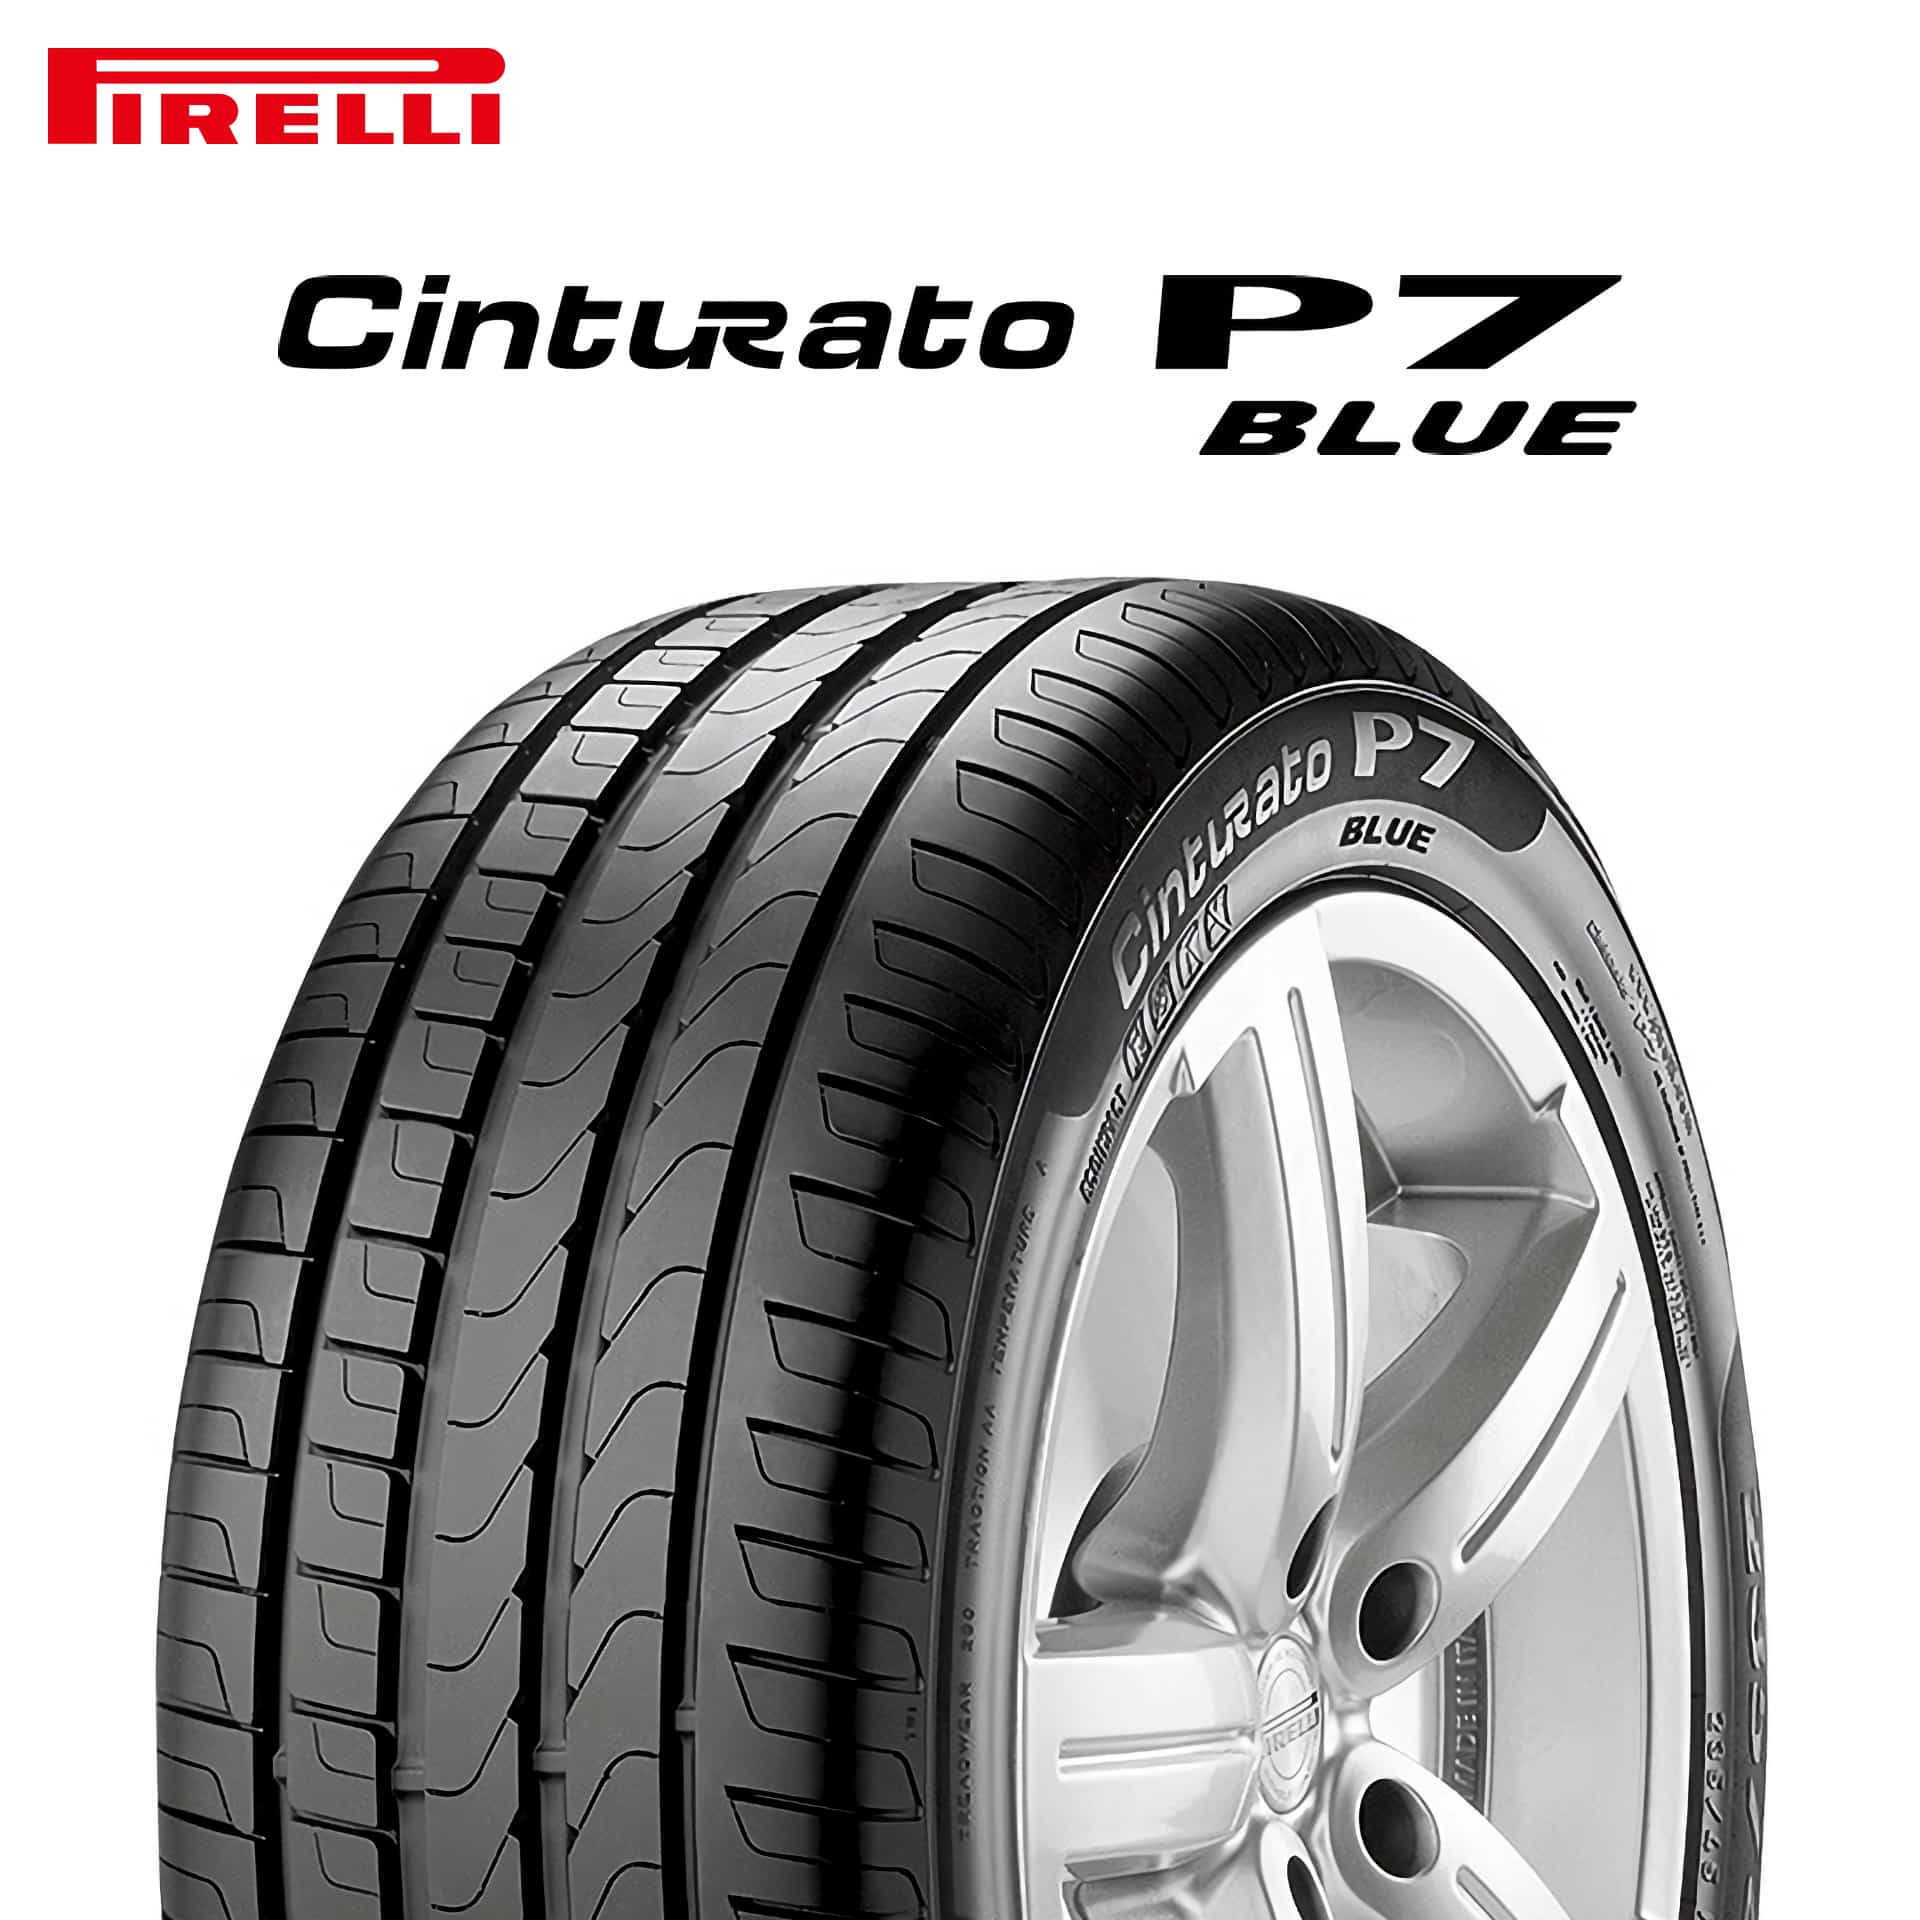 22年製 225/50R17 94H AO ピレリ Cinturato P7 BLUE (チントゥラートP7ブルー) アウディ承認タイヤ 17インチ 新品